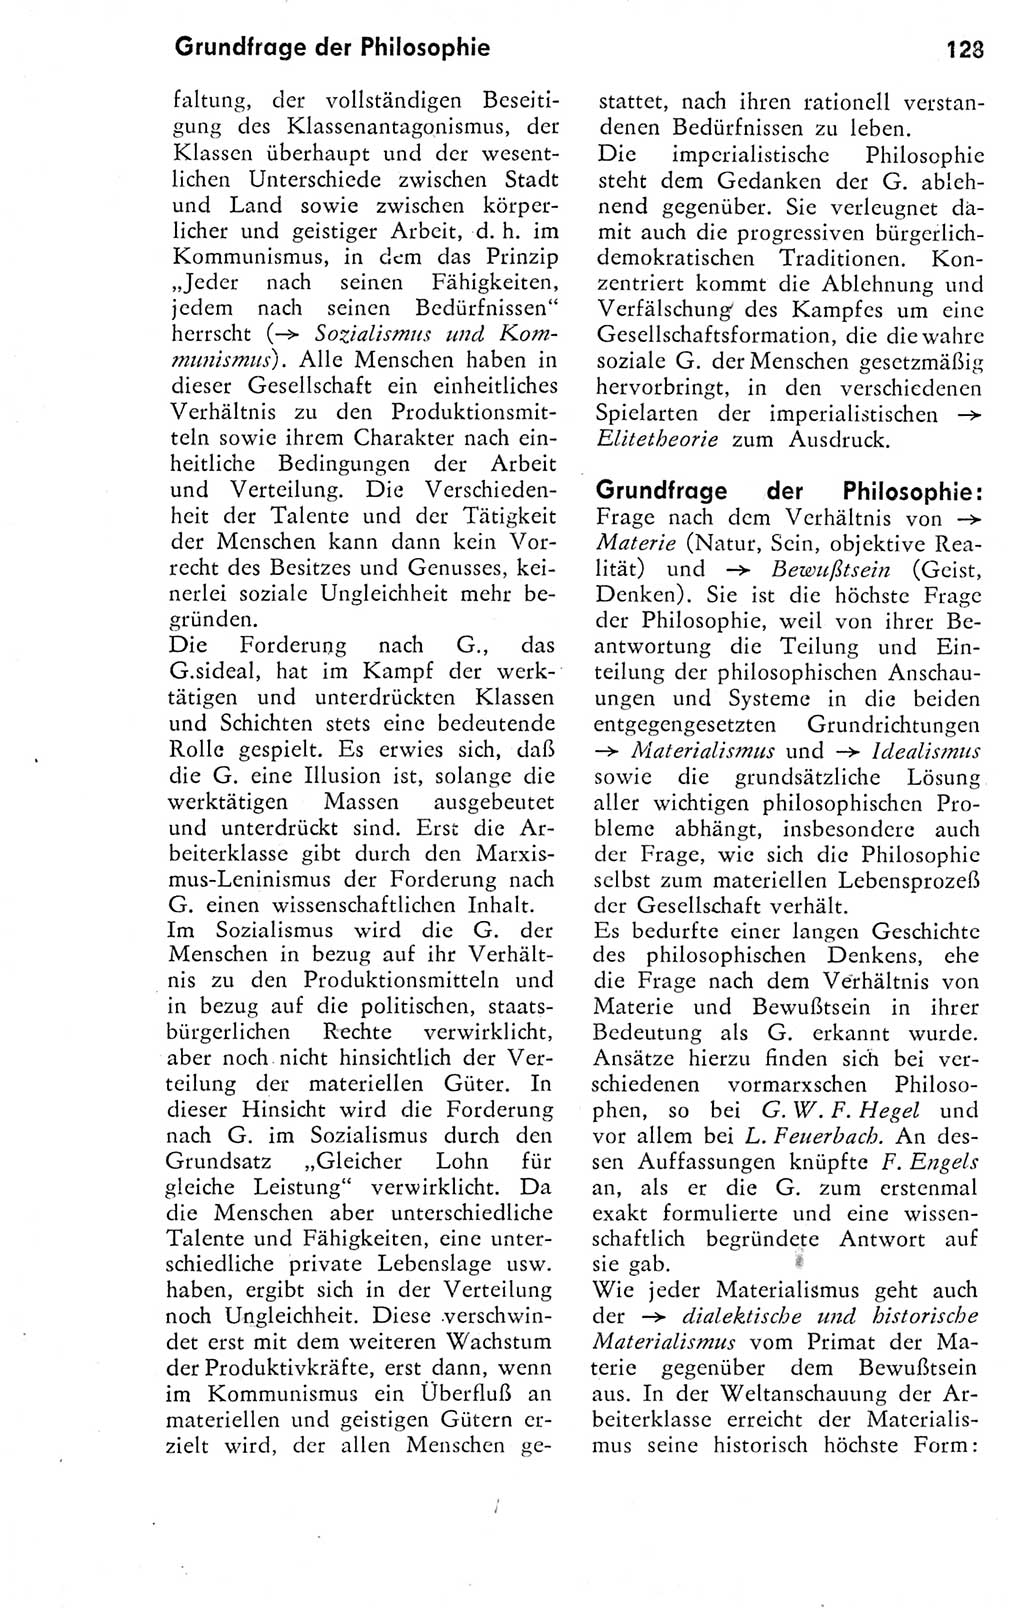 Kleines Wörterbuch der marxistisch-leninistischen Philosophie [Deutsche Demokratische Republik (DDR)] 1974, Seite 128 (Kl. Wb. ML Phil. DDR 1974, S. 128)